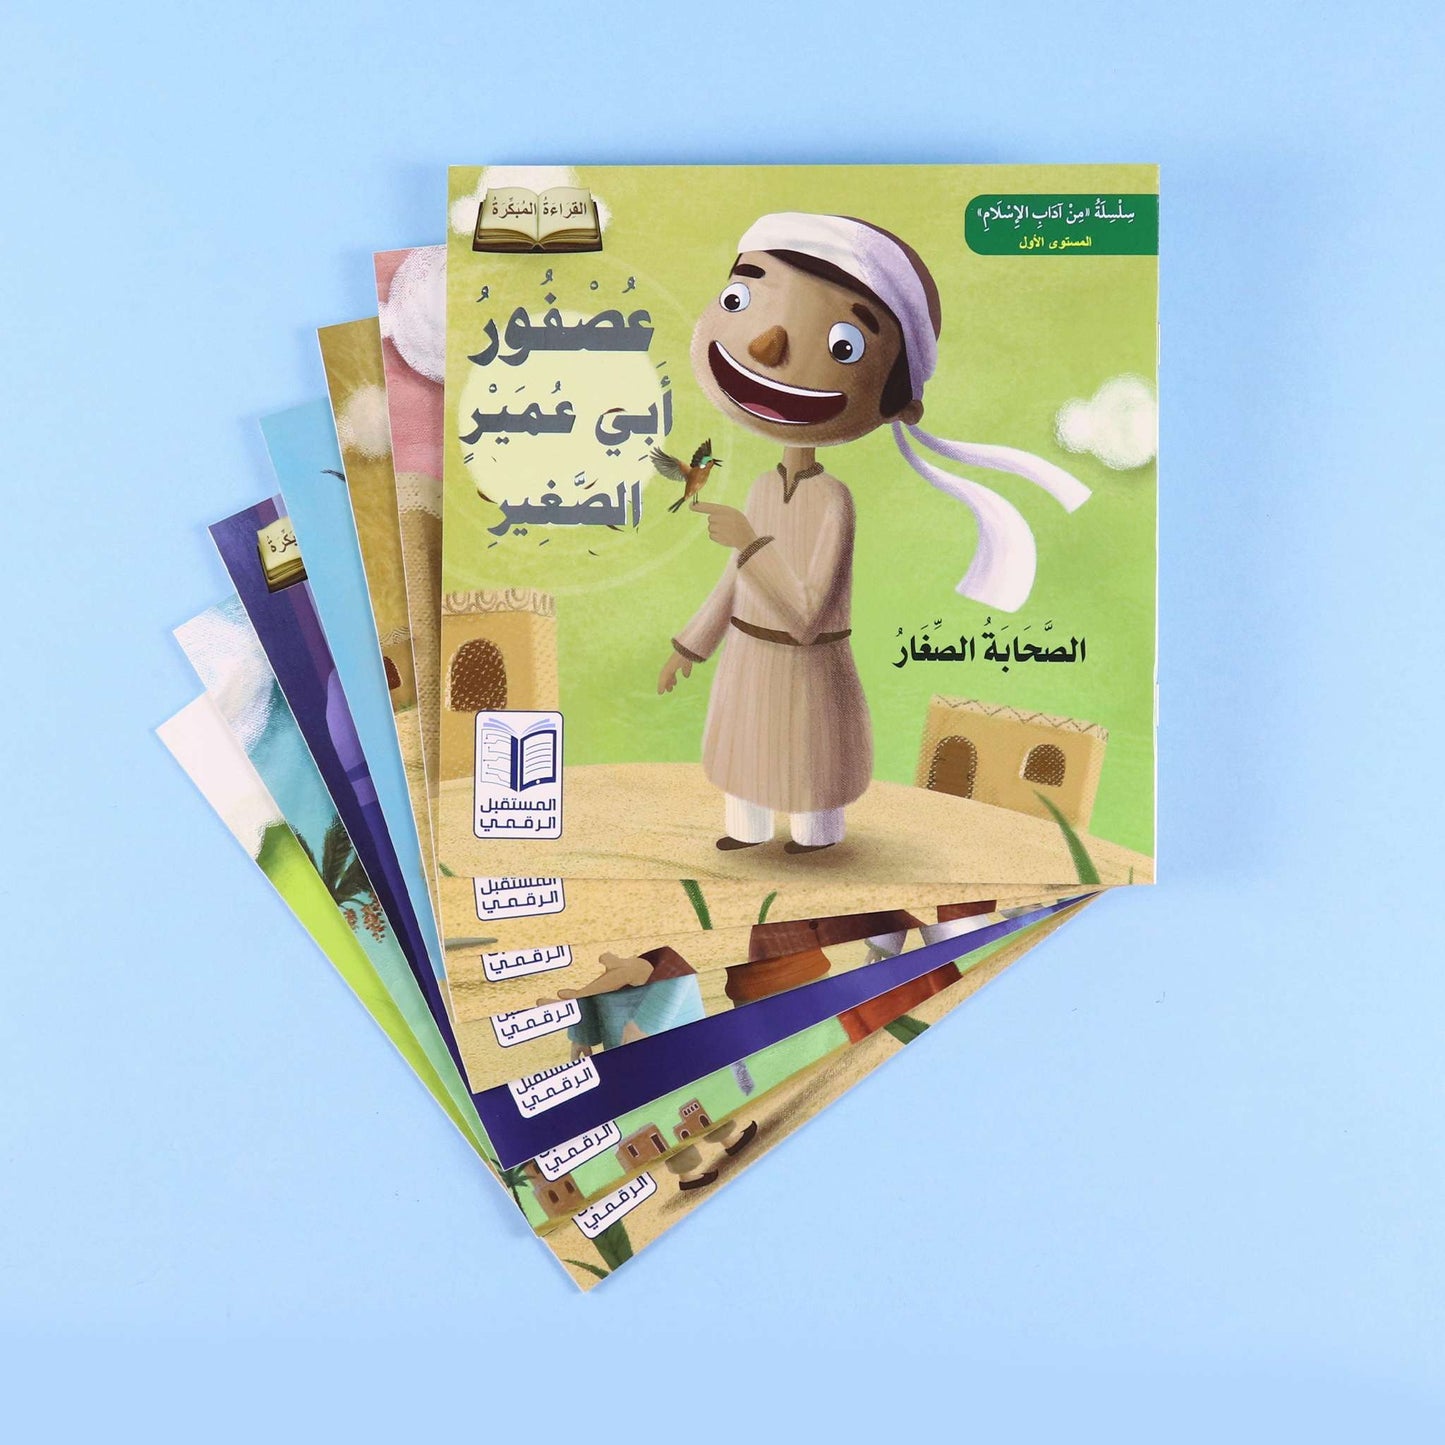 الصحابة الصغار - سلسلة من أدب الإسلام - المستوى الأول - 6 قصص